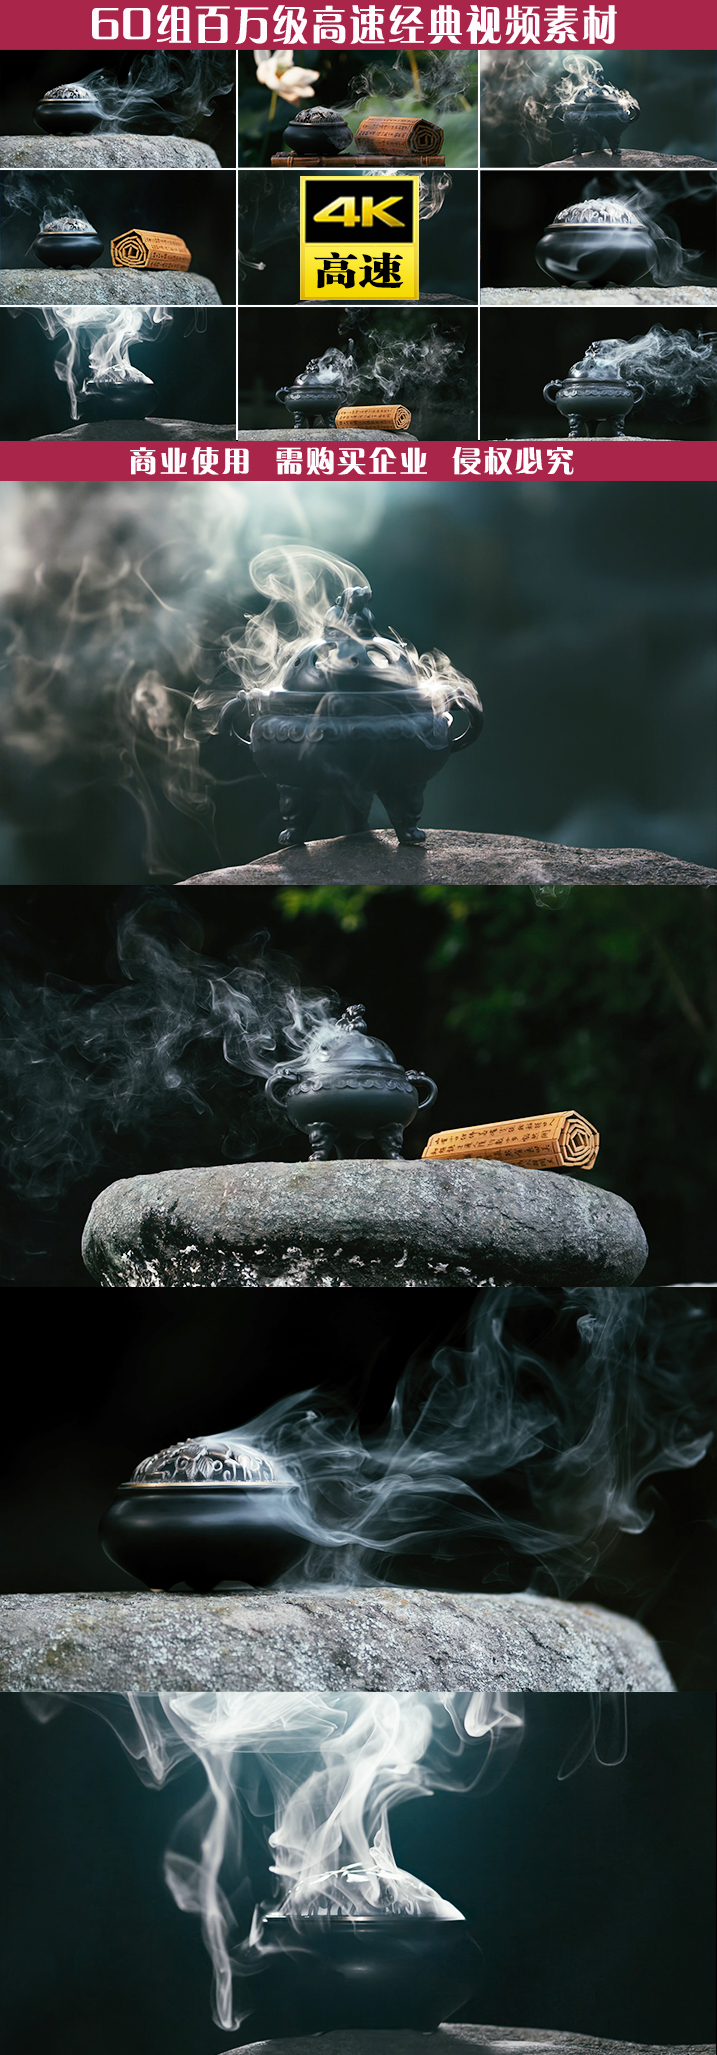 烟香炉修行道法自然檀香烟雾道观道文化静心